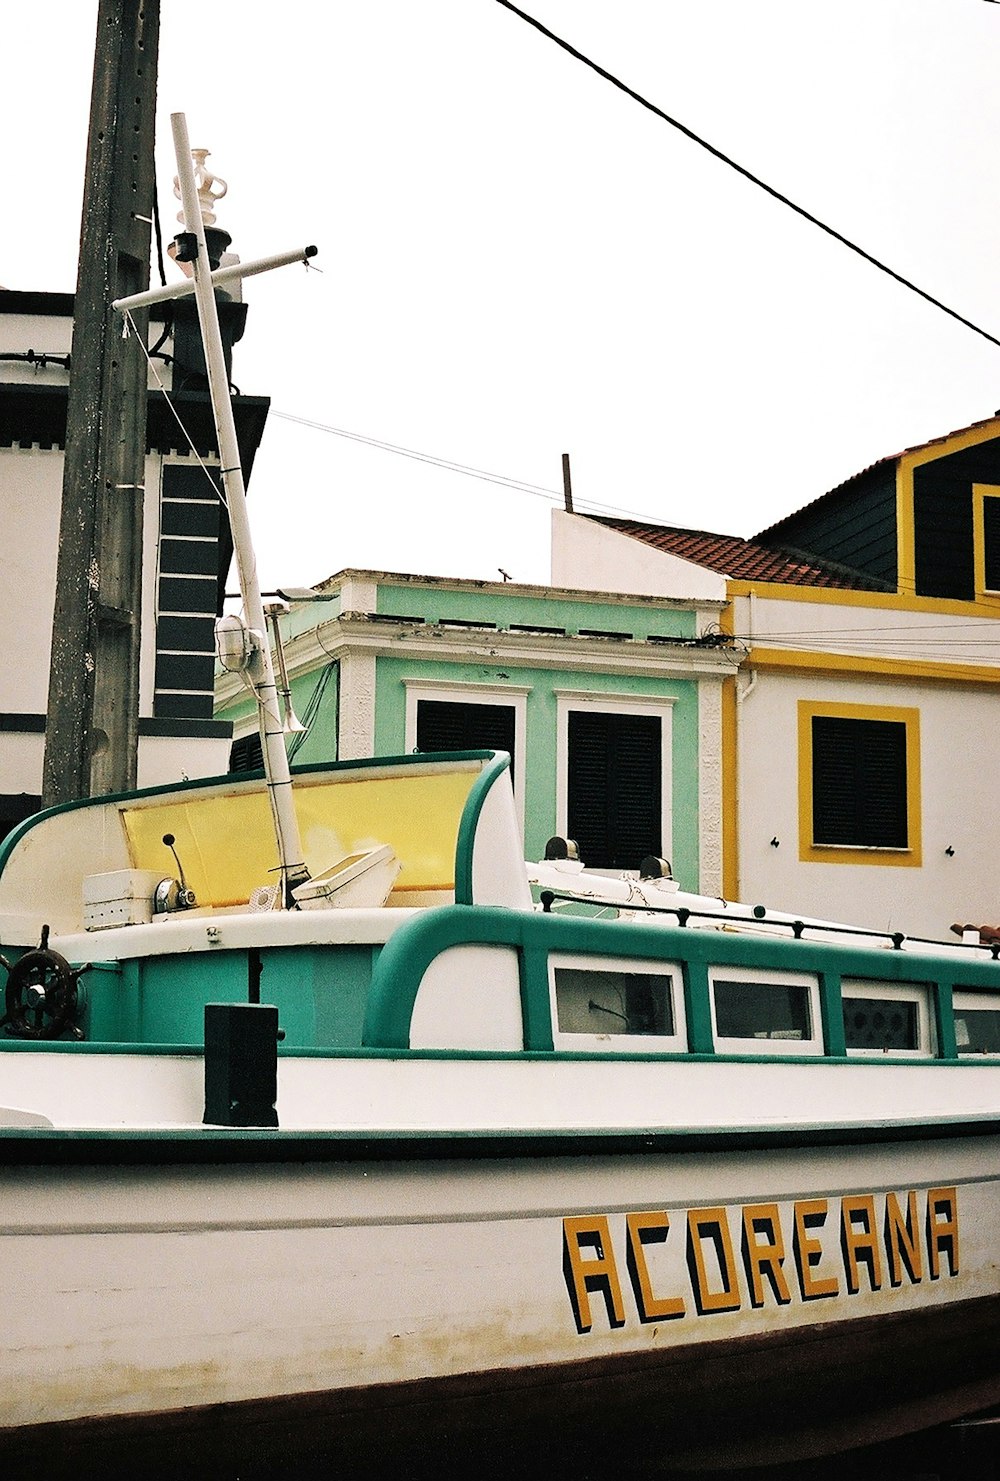 un bateau vert et blanc garé devant un immeuble